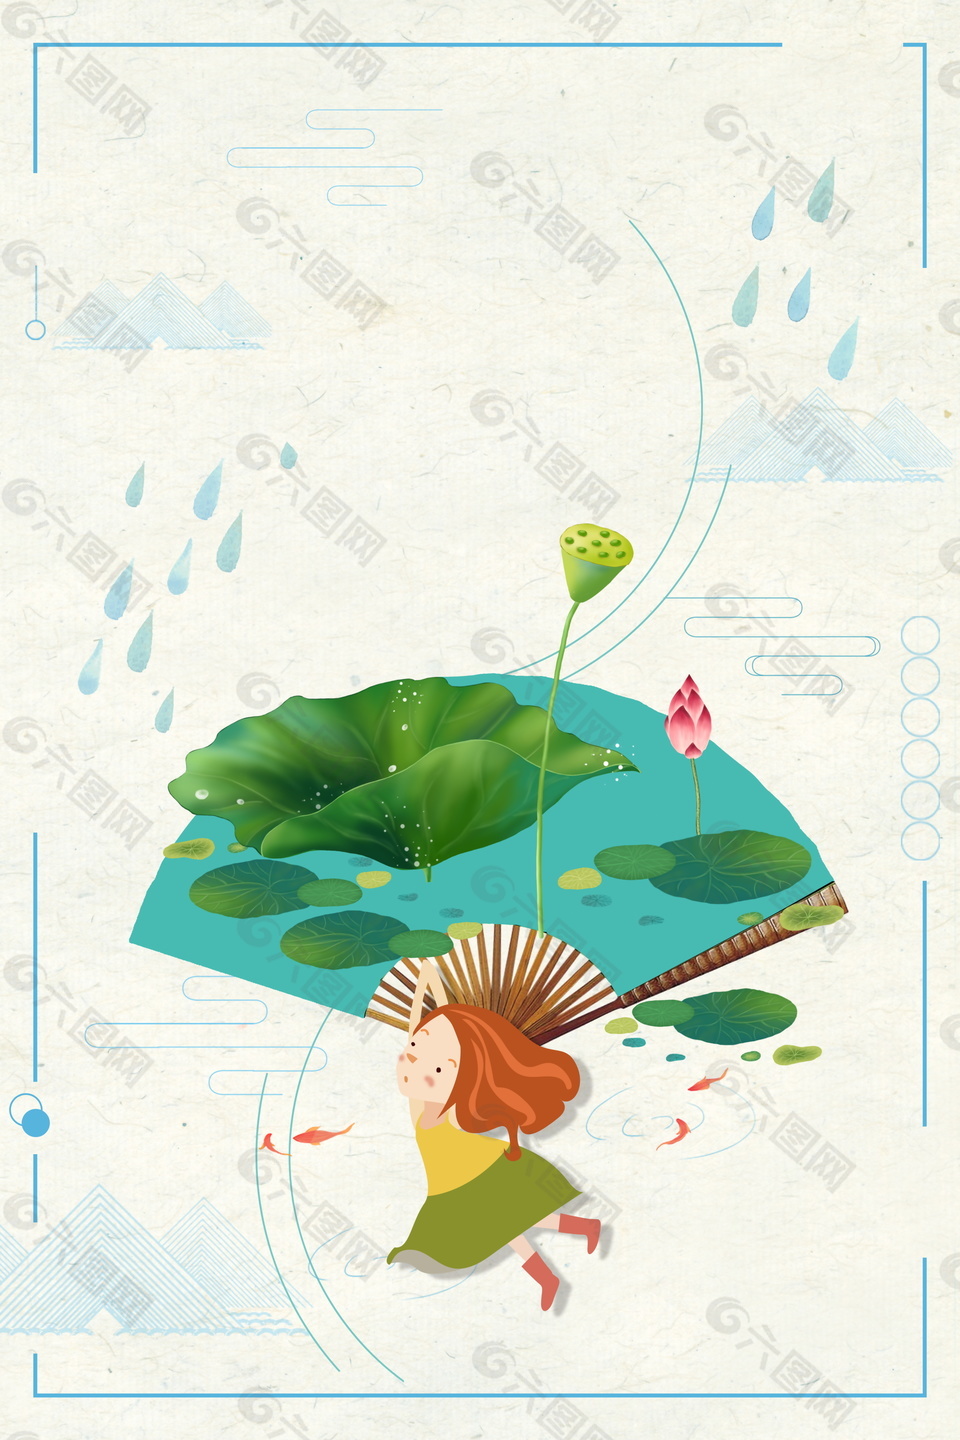 彩绘扇形荷花仙子水滴边框海报背景素材